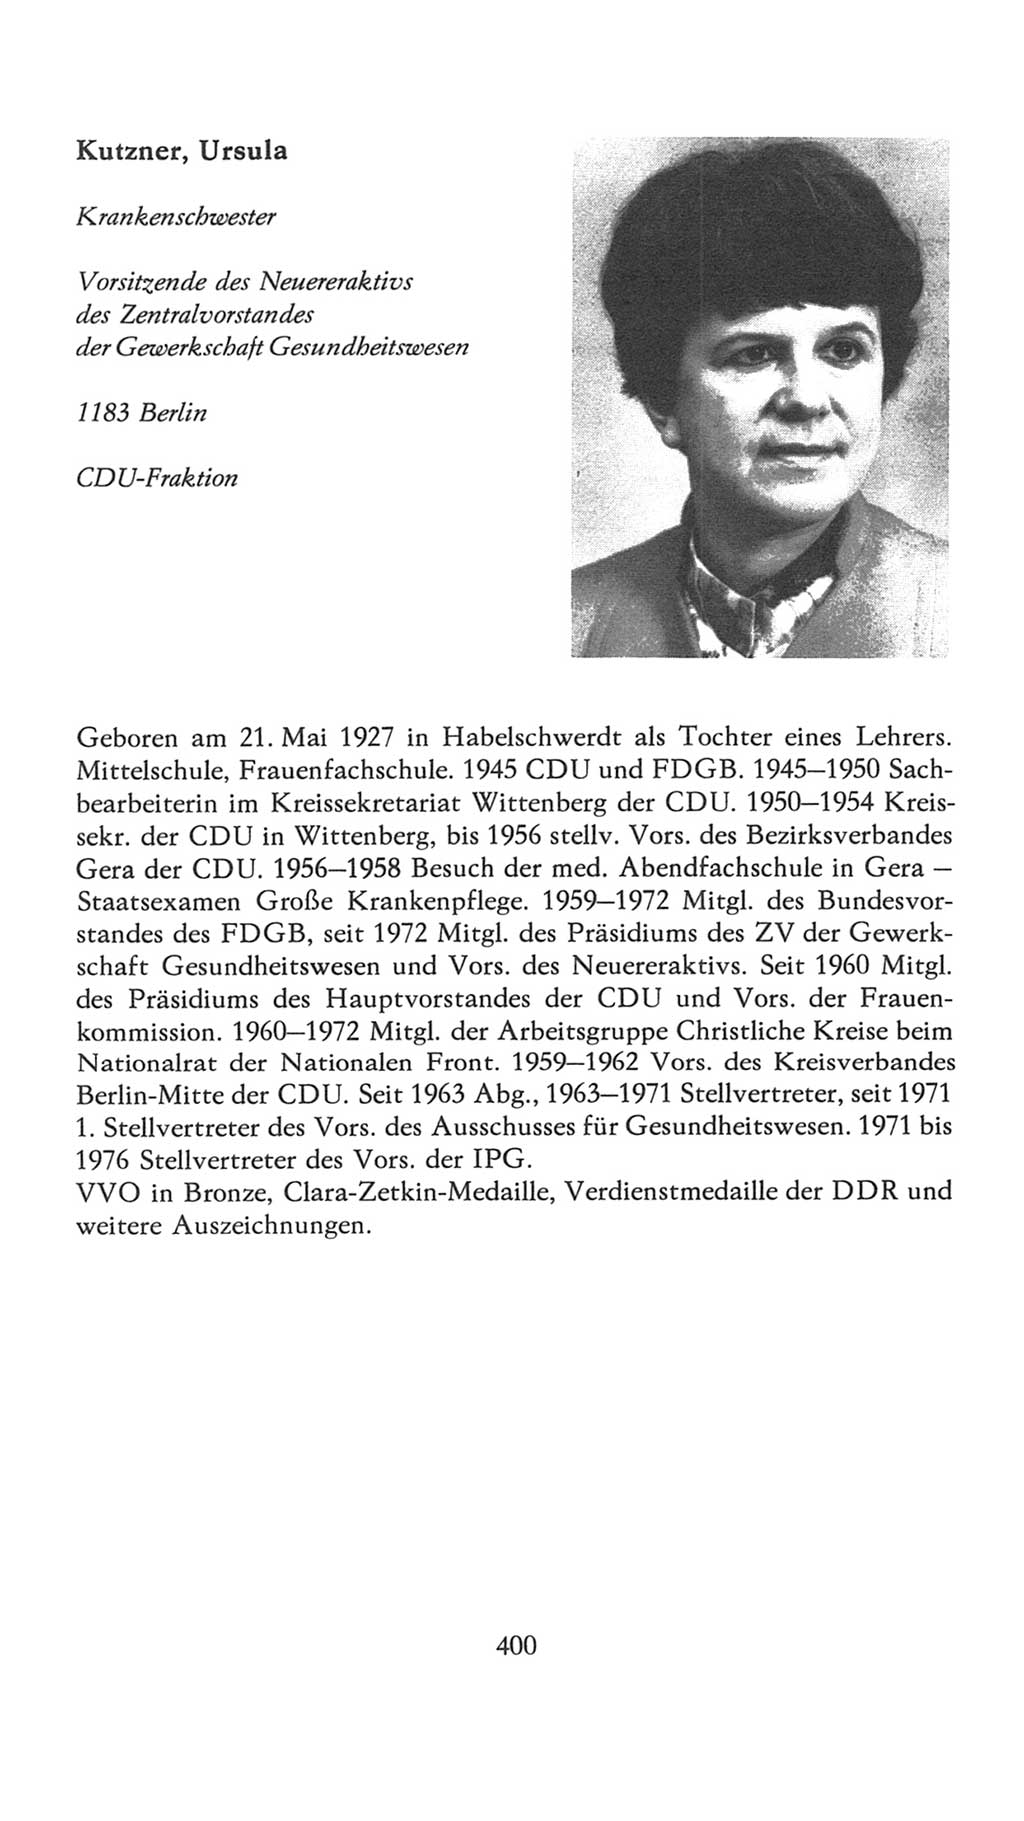 Volkskammer (VK) der Deutschen Demokratischen Republik (DDR), 7. Wahlperiode 1976-1981, Seite 400 (VK. DDR 7. WP. 1976-1981, S. 400)